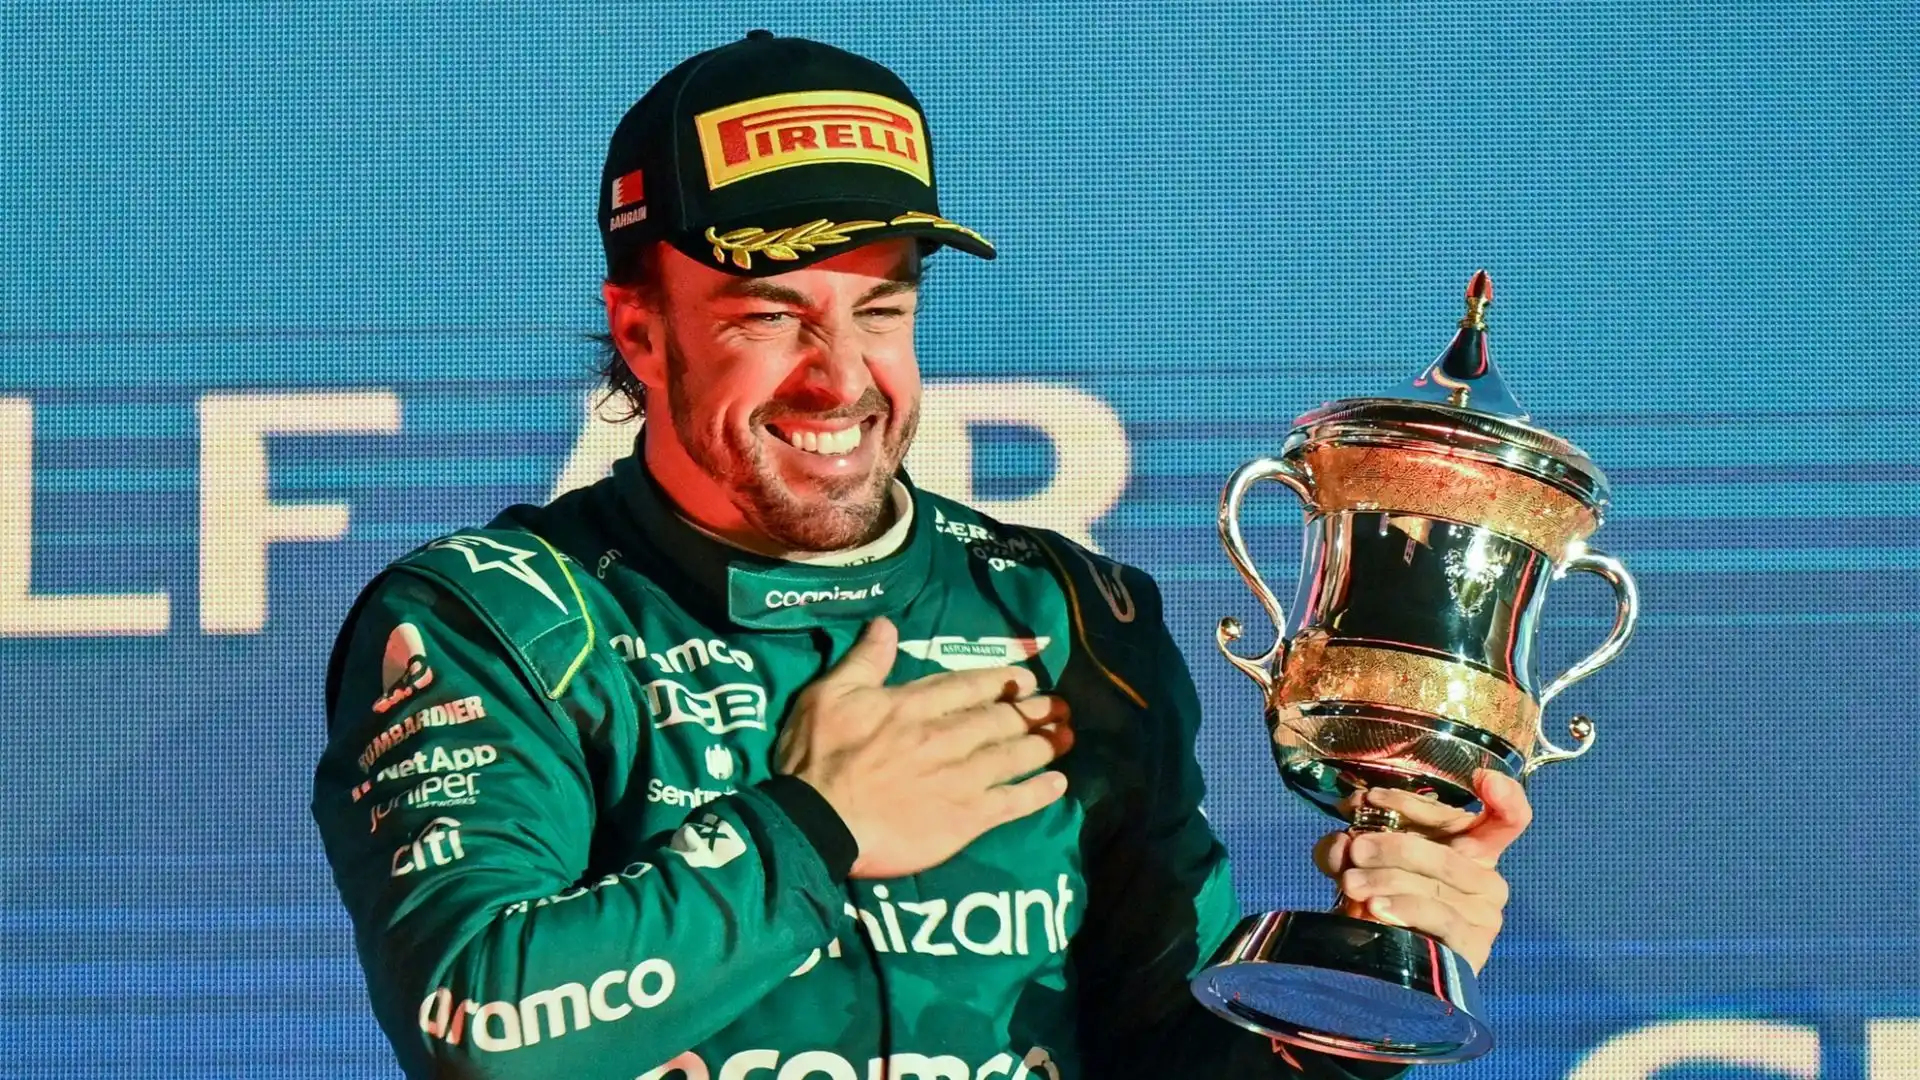 Nonostante l'età, Alonso resta competitivo: "È un esempio di resistenza, ed è ben preparato fisicamente per competere"